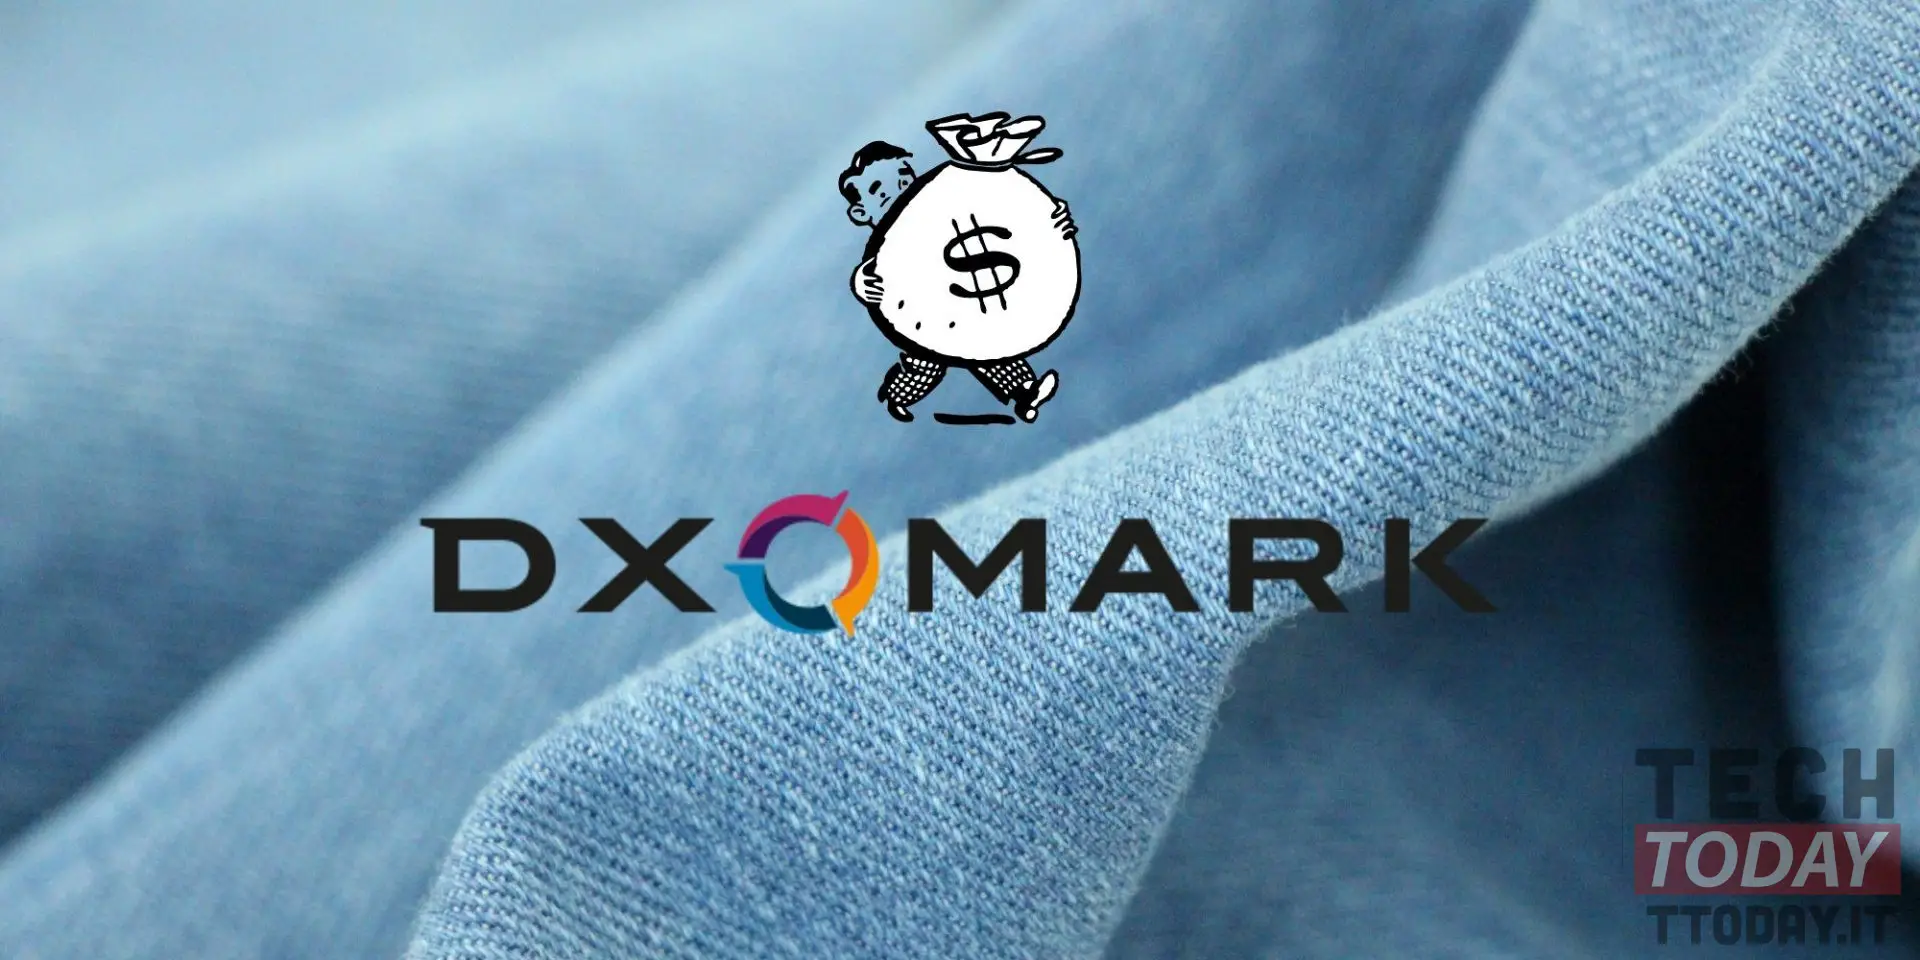 dxomark מכניס את הפילוח והמחיר של הסמארטפונים